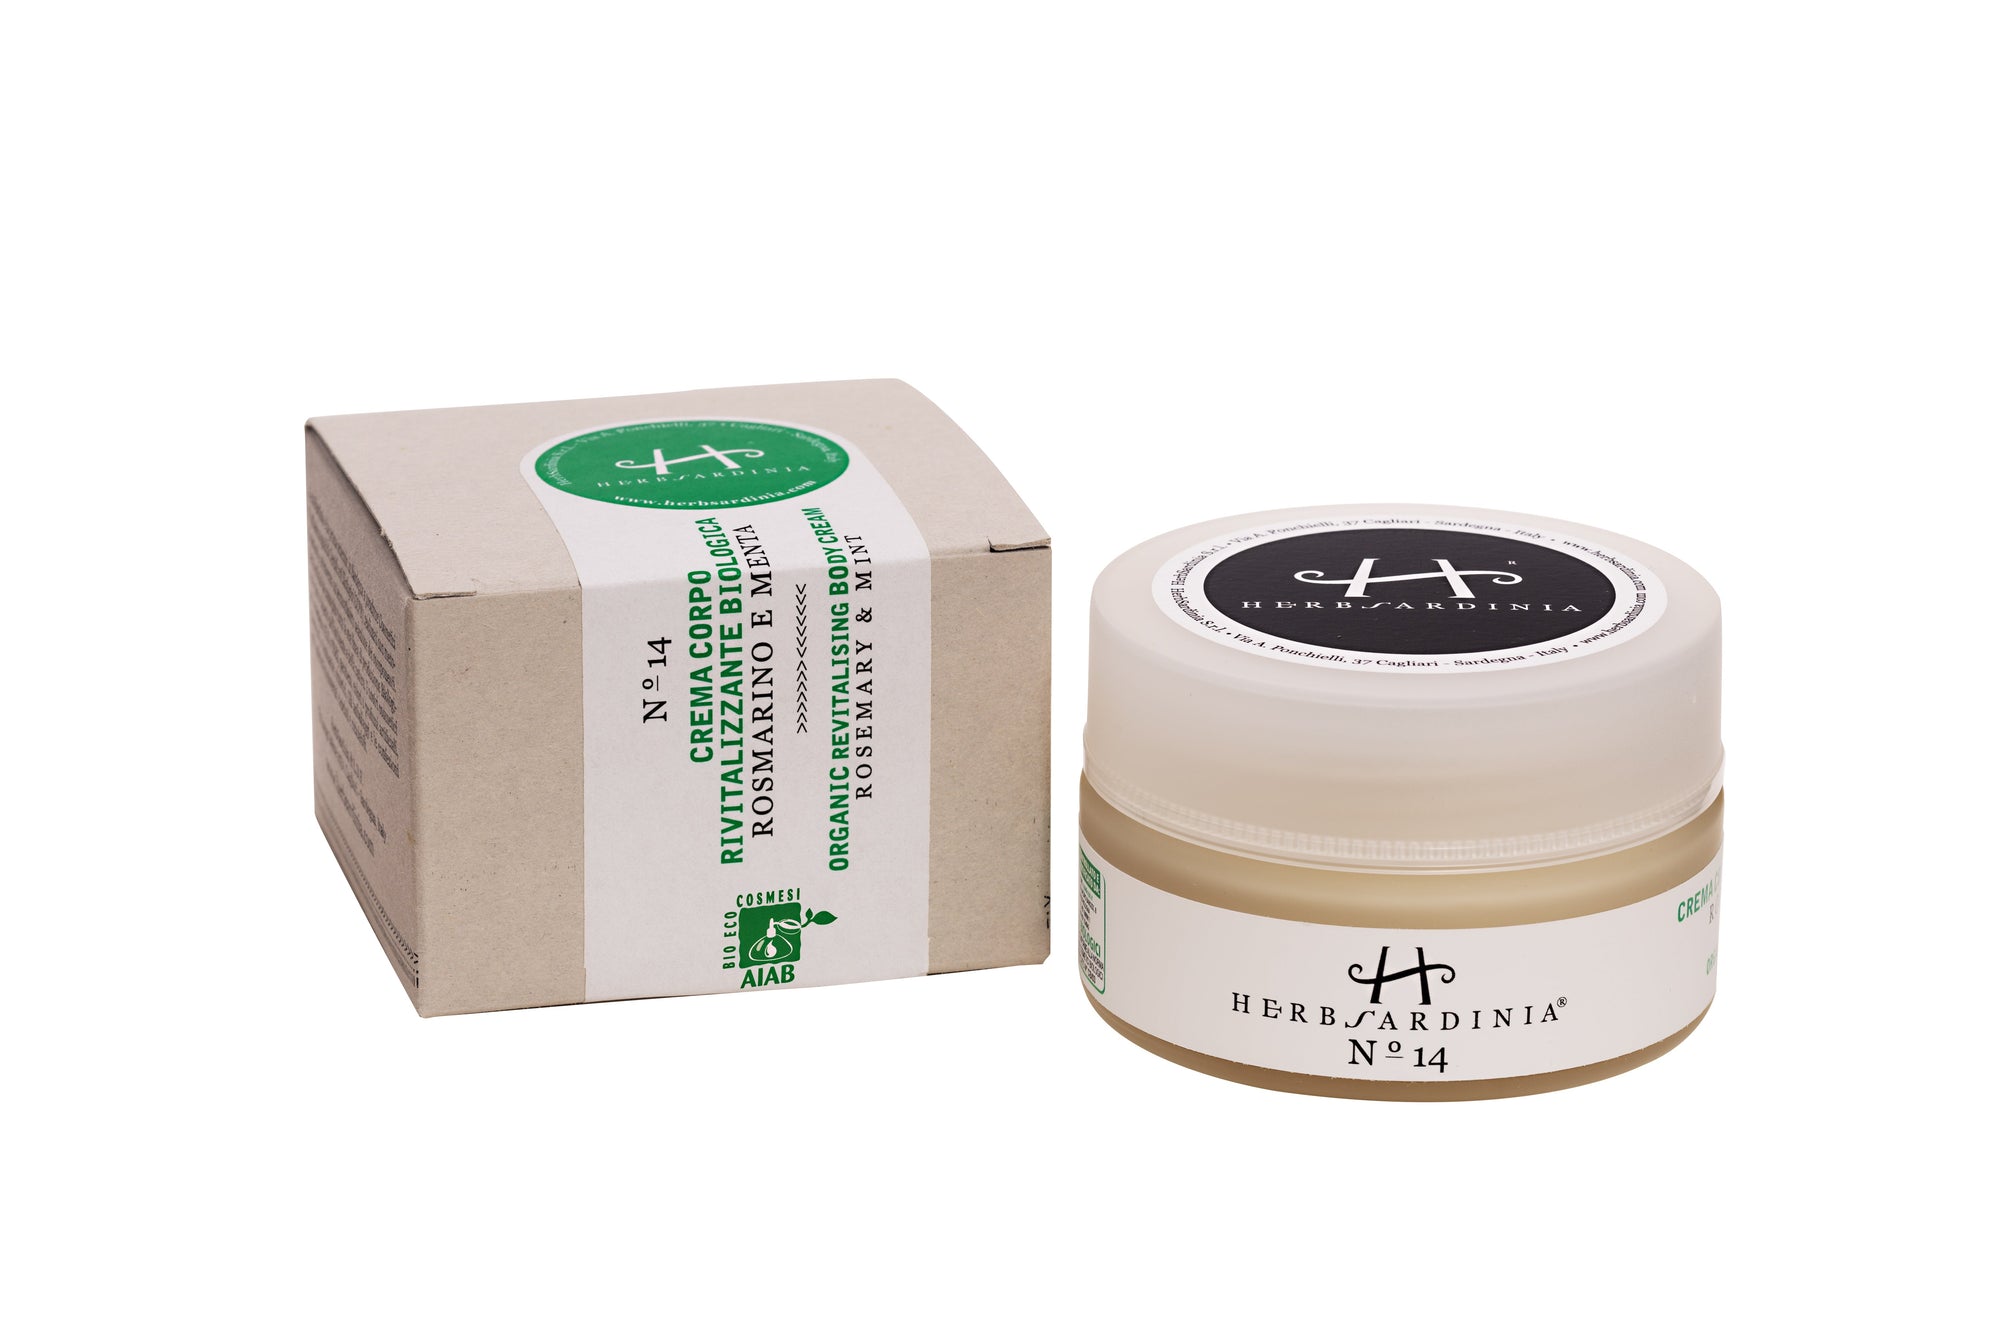 HerbSardinia Organic Rosemary & Mint Revitalizing Body Cream 100 ml